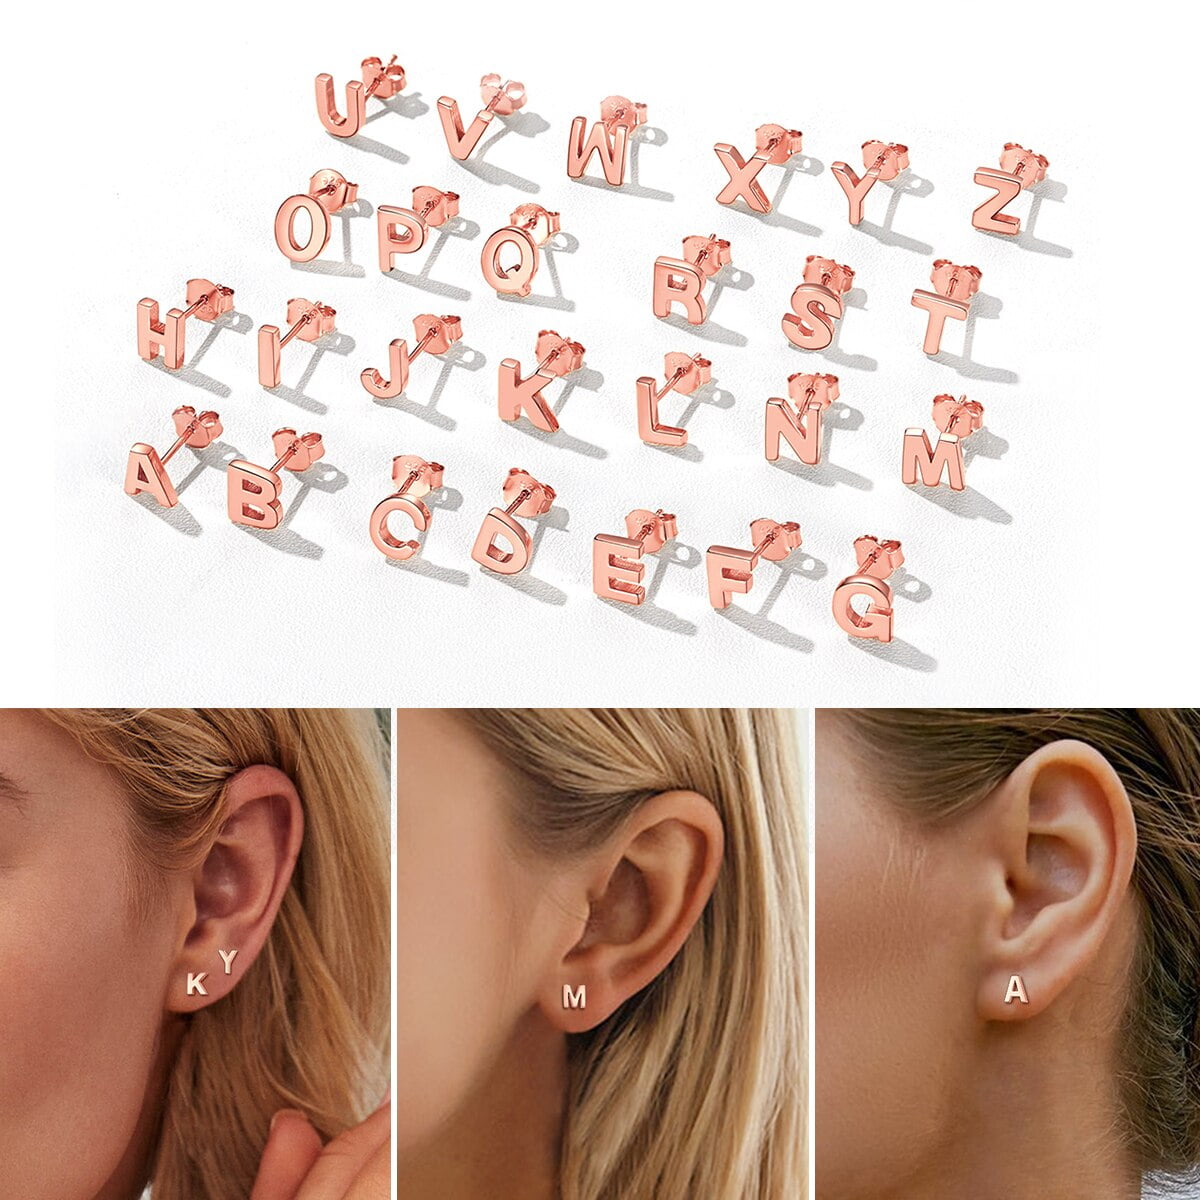 Rowan® | Piercing by Licensed Nurses. Hypoallergenic Earrings for All